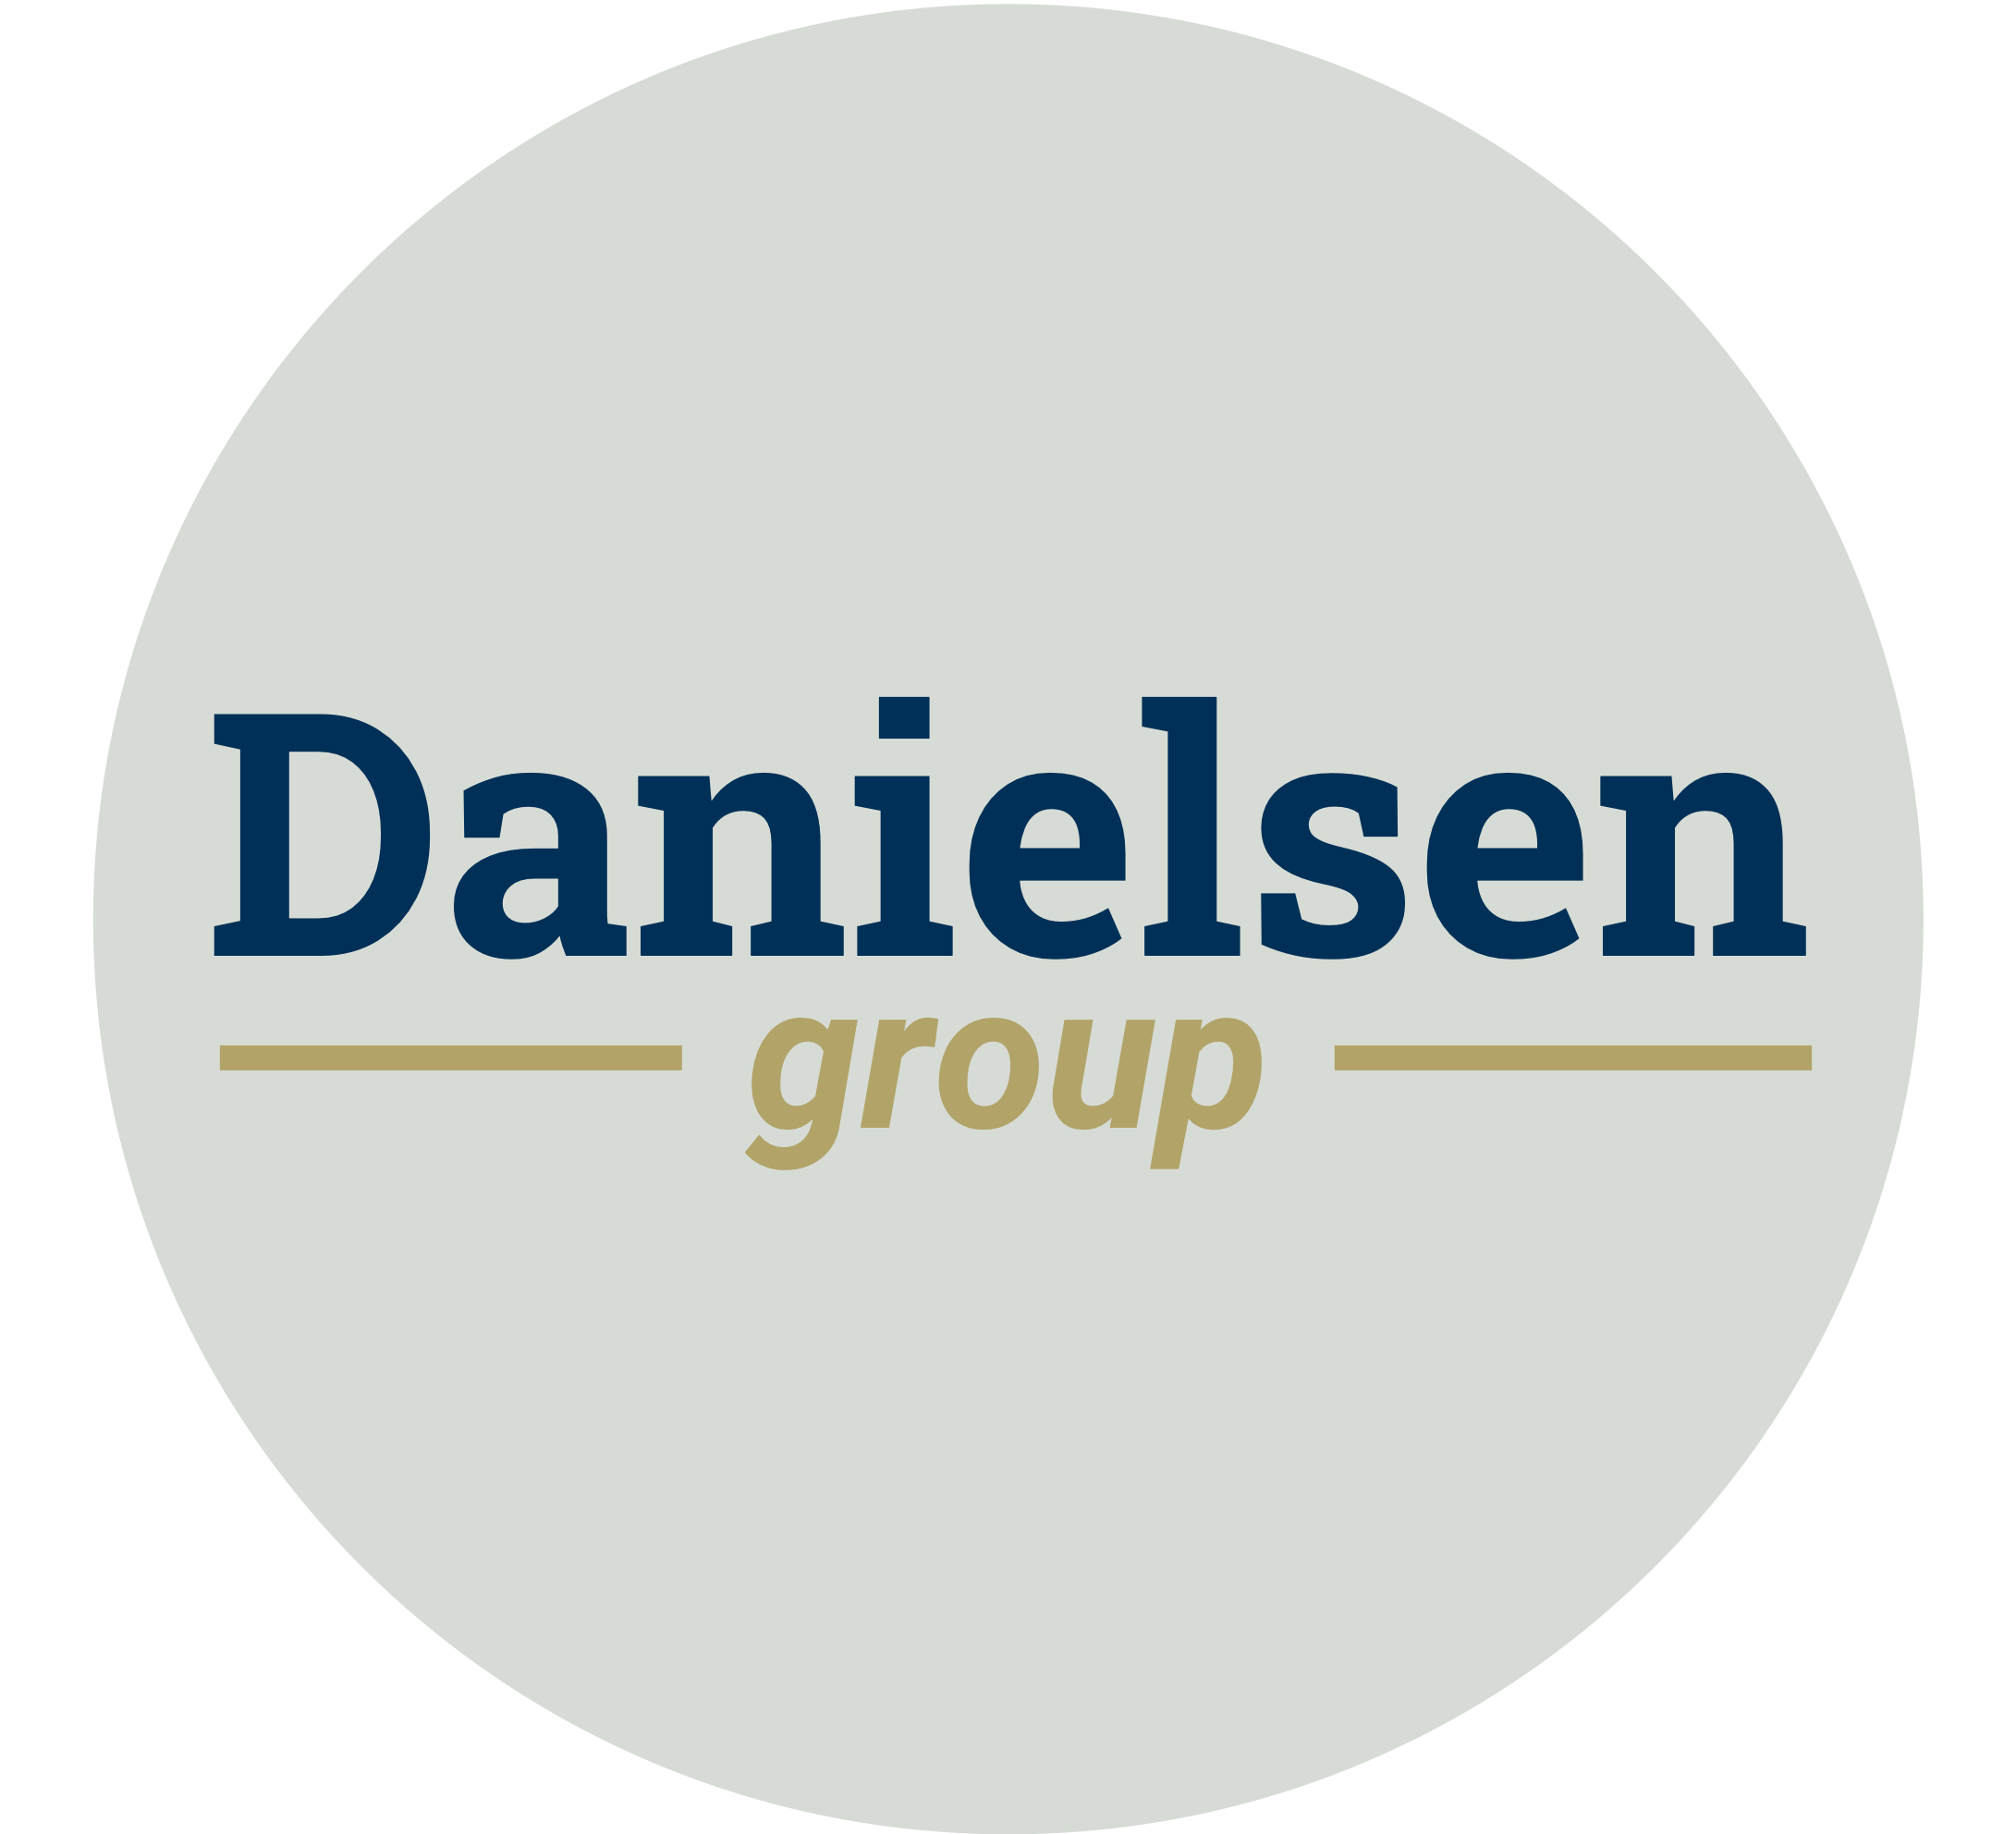 Danielsen Group